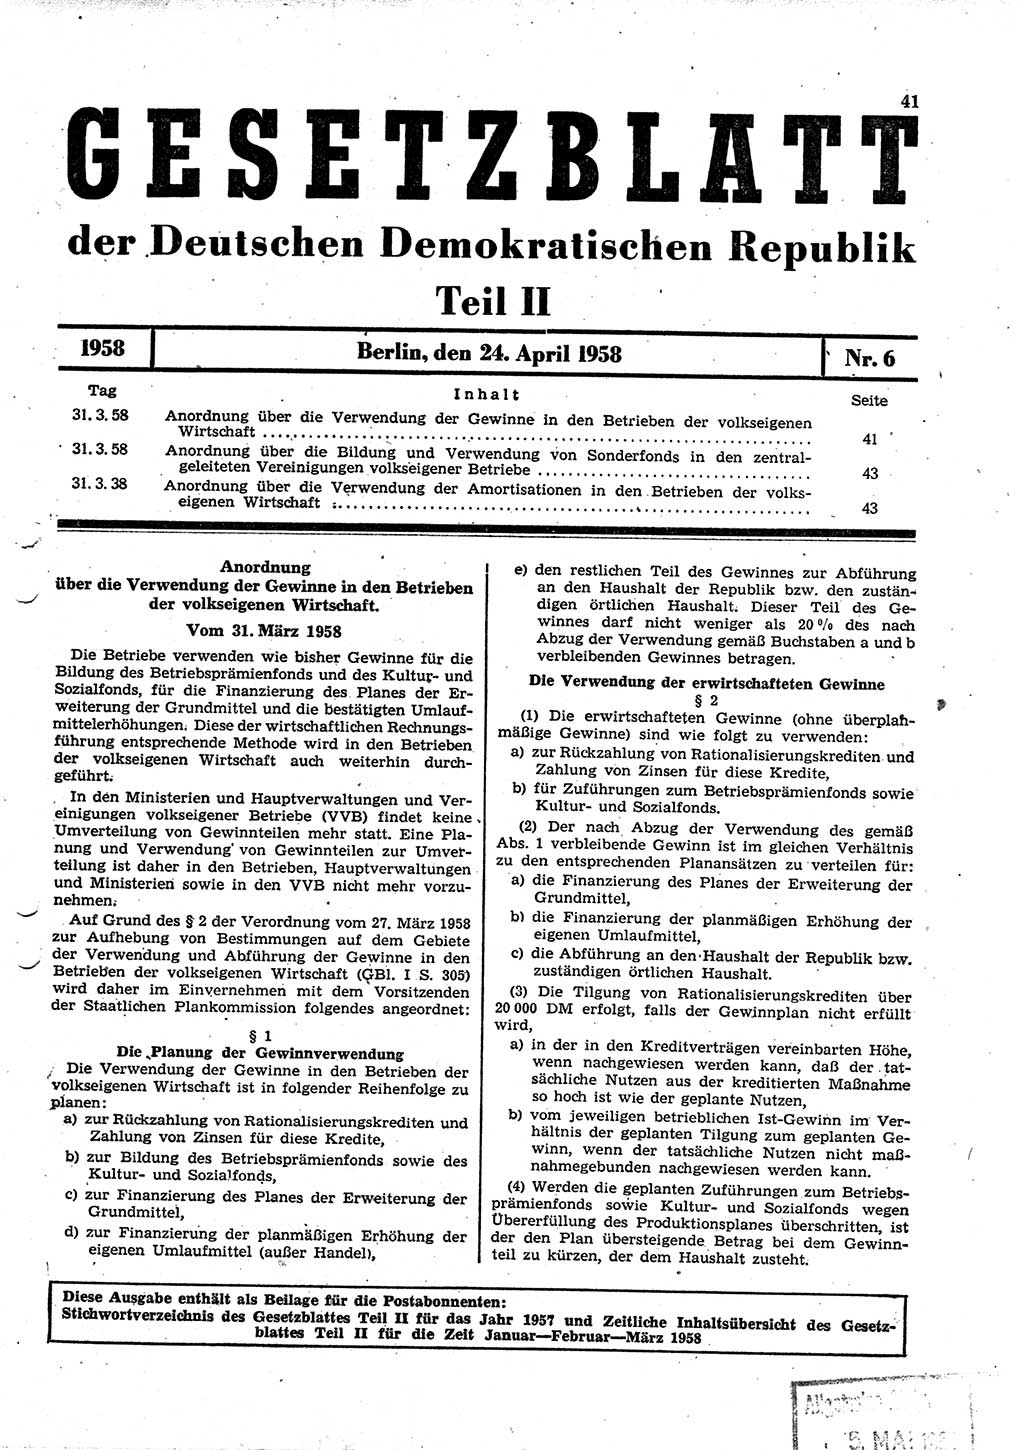 Gesetzblatt (GBl.) der Deutschen Demokratischen Republik (DDR) Teil ⅠⅠ 1958, Seite 41 (GBl. DDR ⅠⅠ 1958, S. 41)